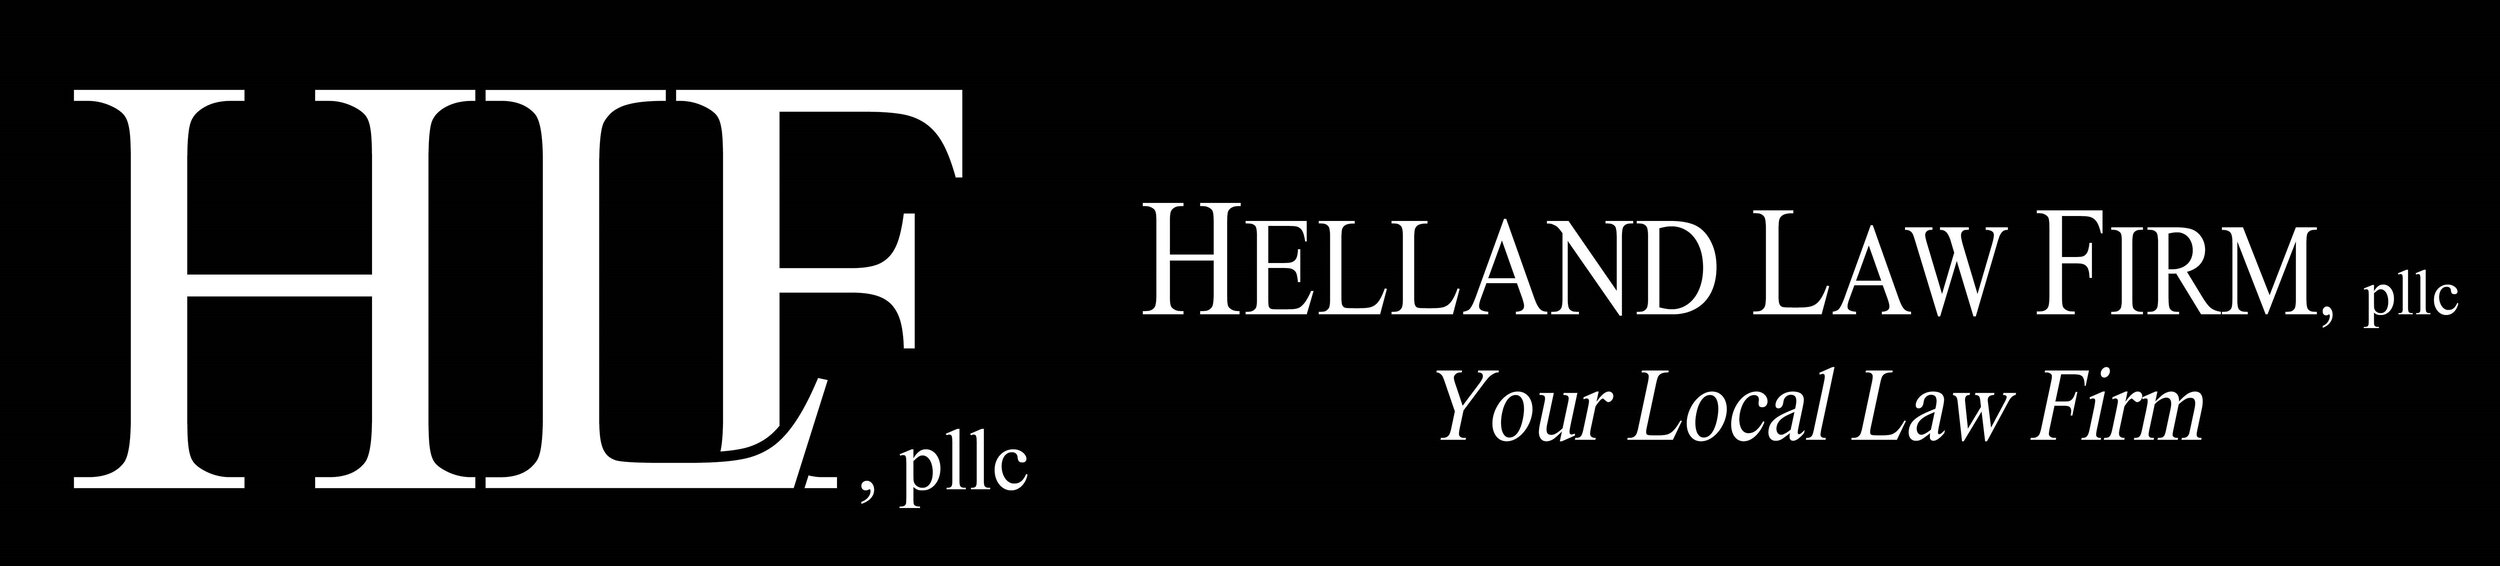 Helland Law Firm, pllc 